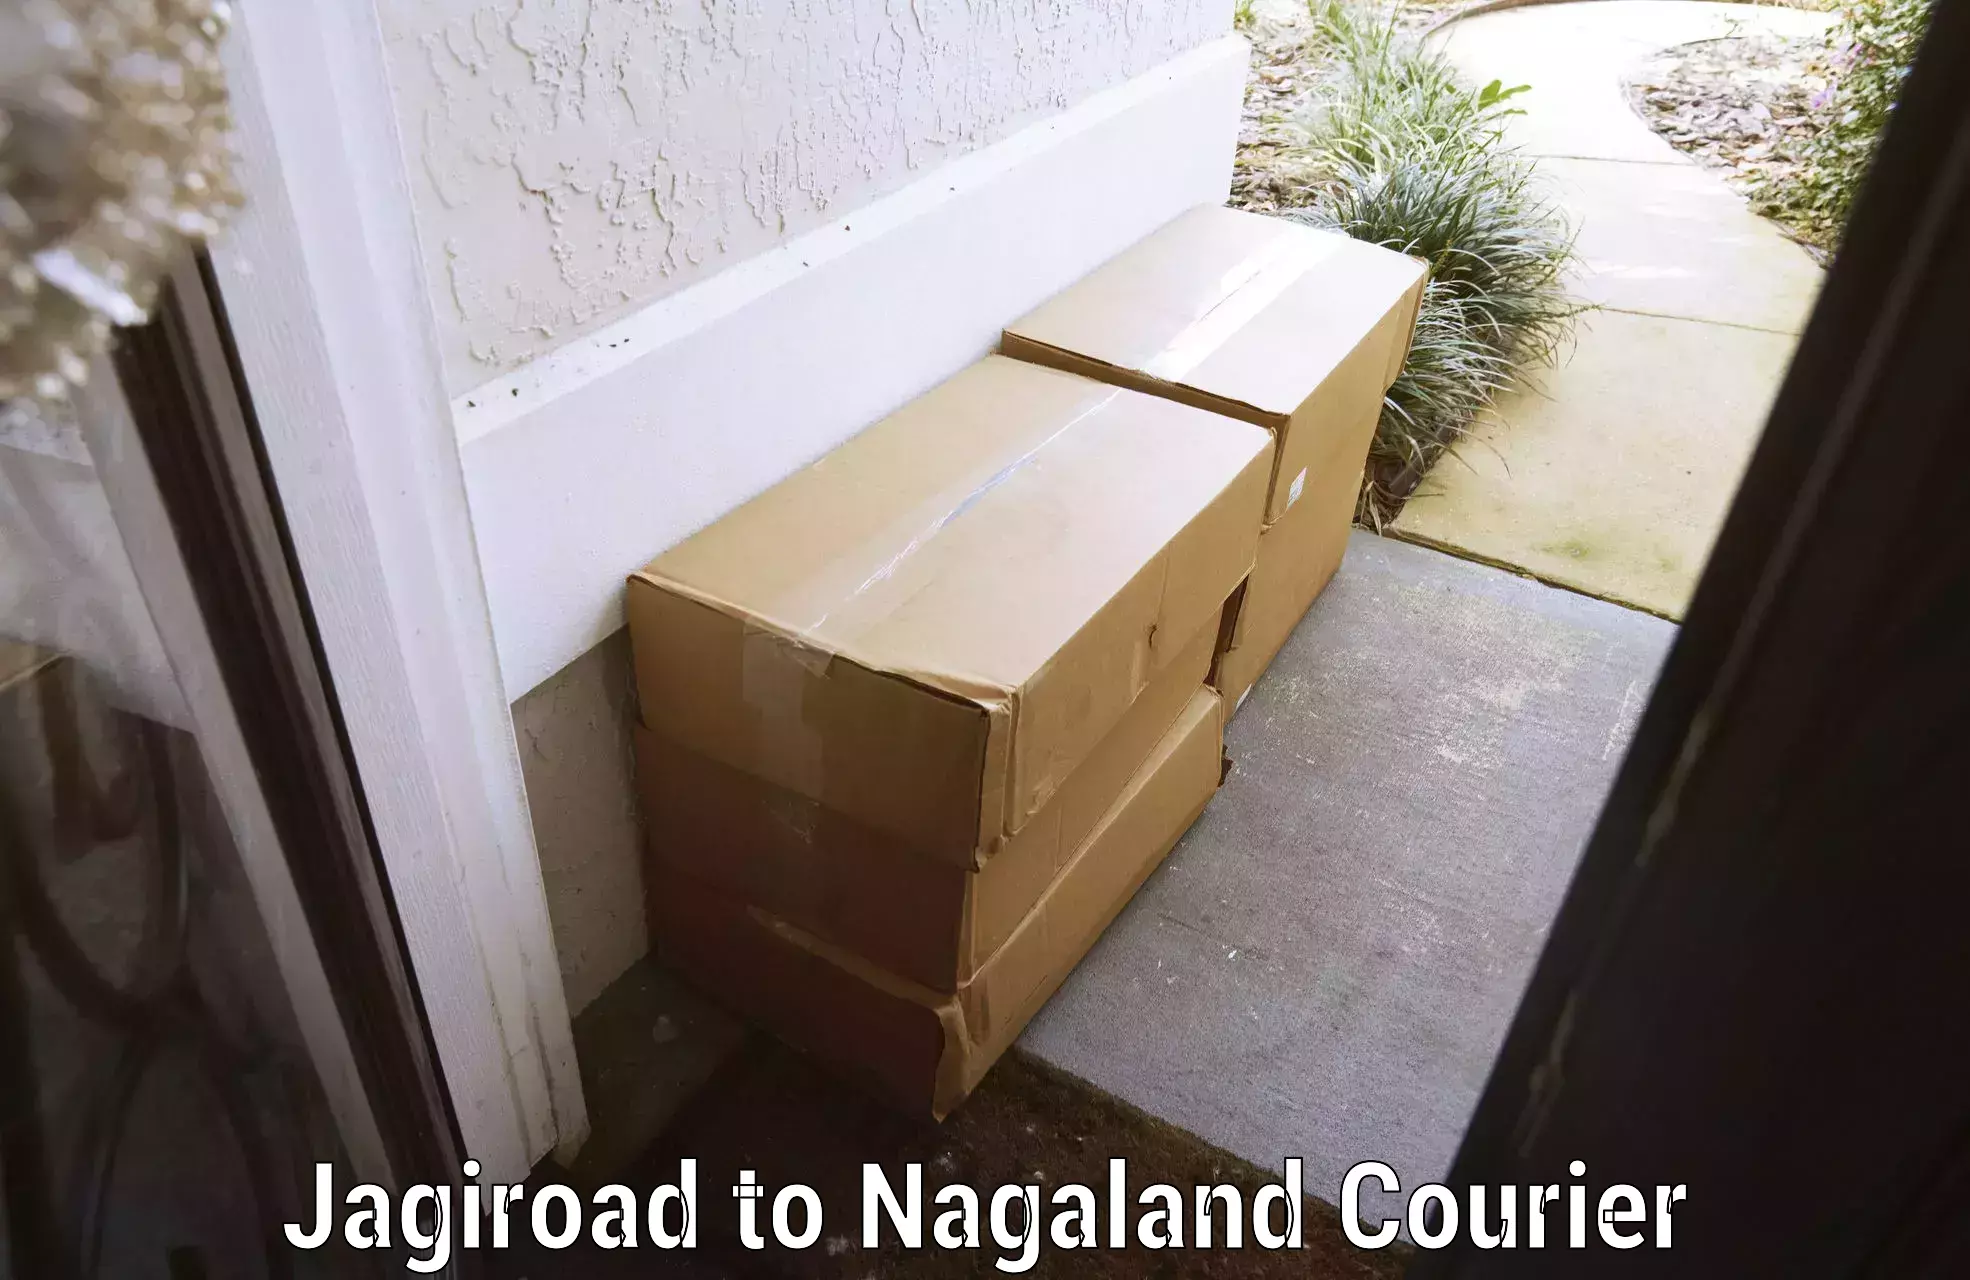 Door-to-door baggage service Jagiroad to Nagaland